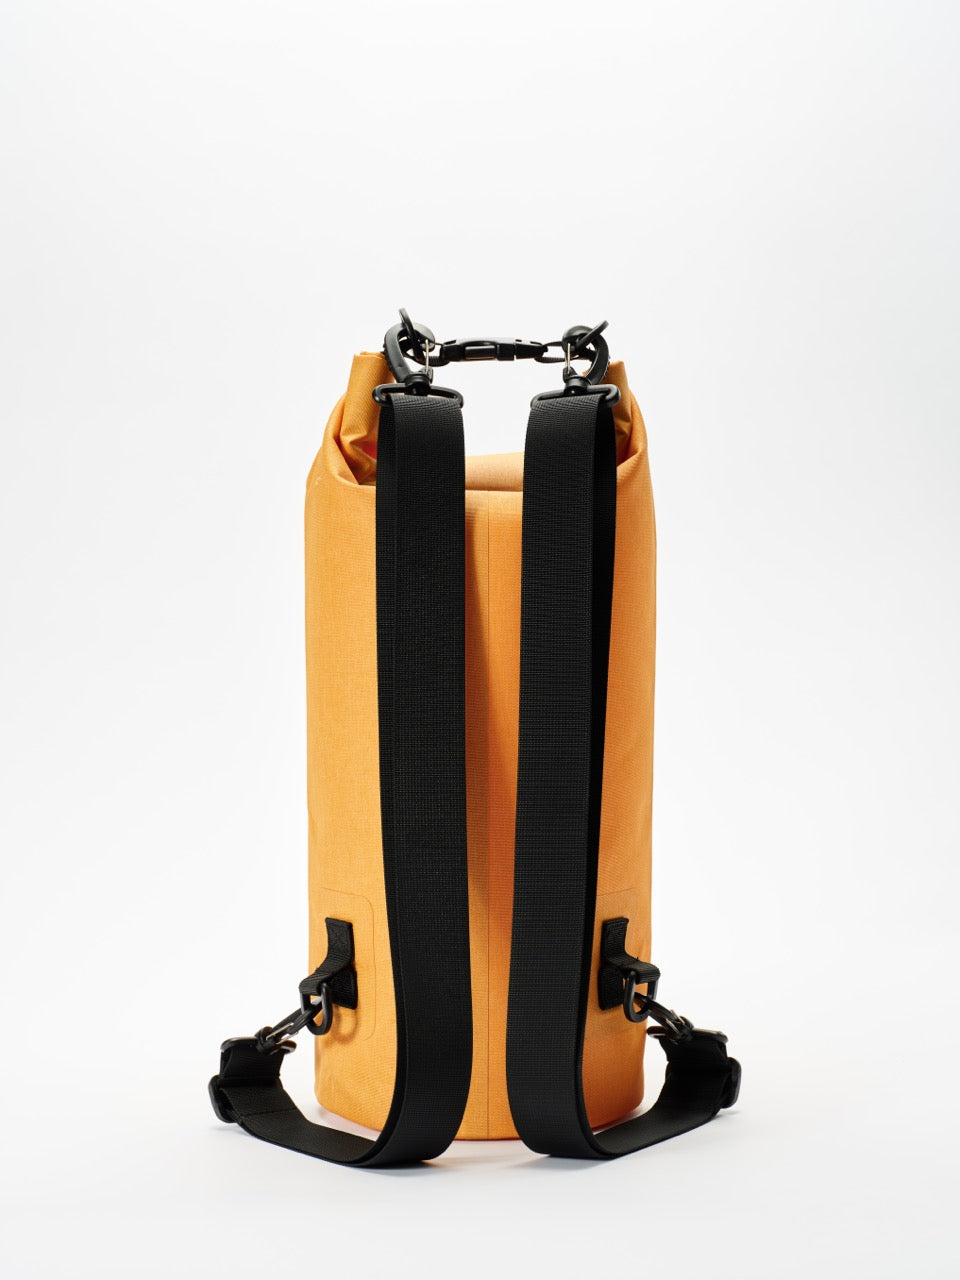 WILI WILI - 15 Liter Dry Bag - Sunset Yellow